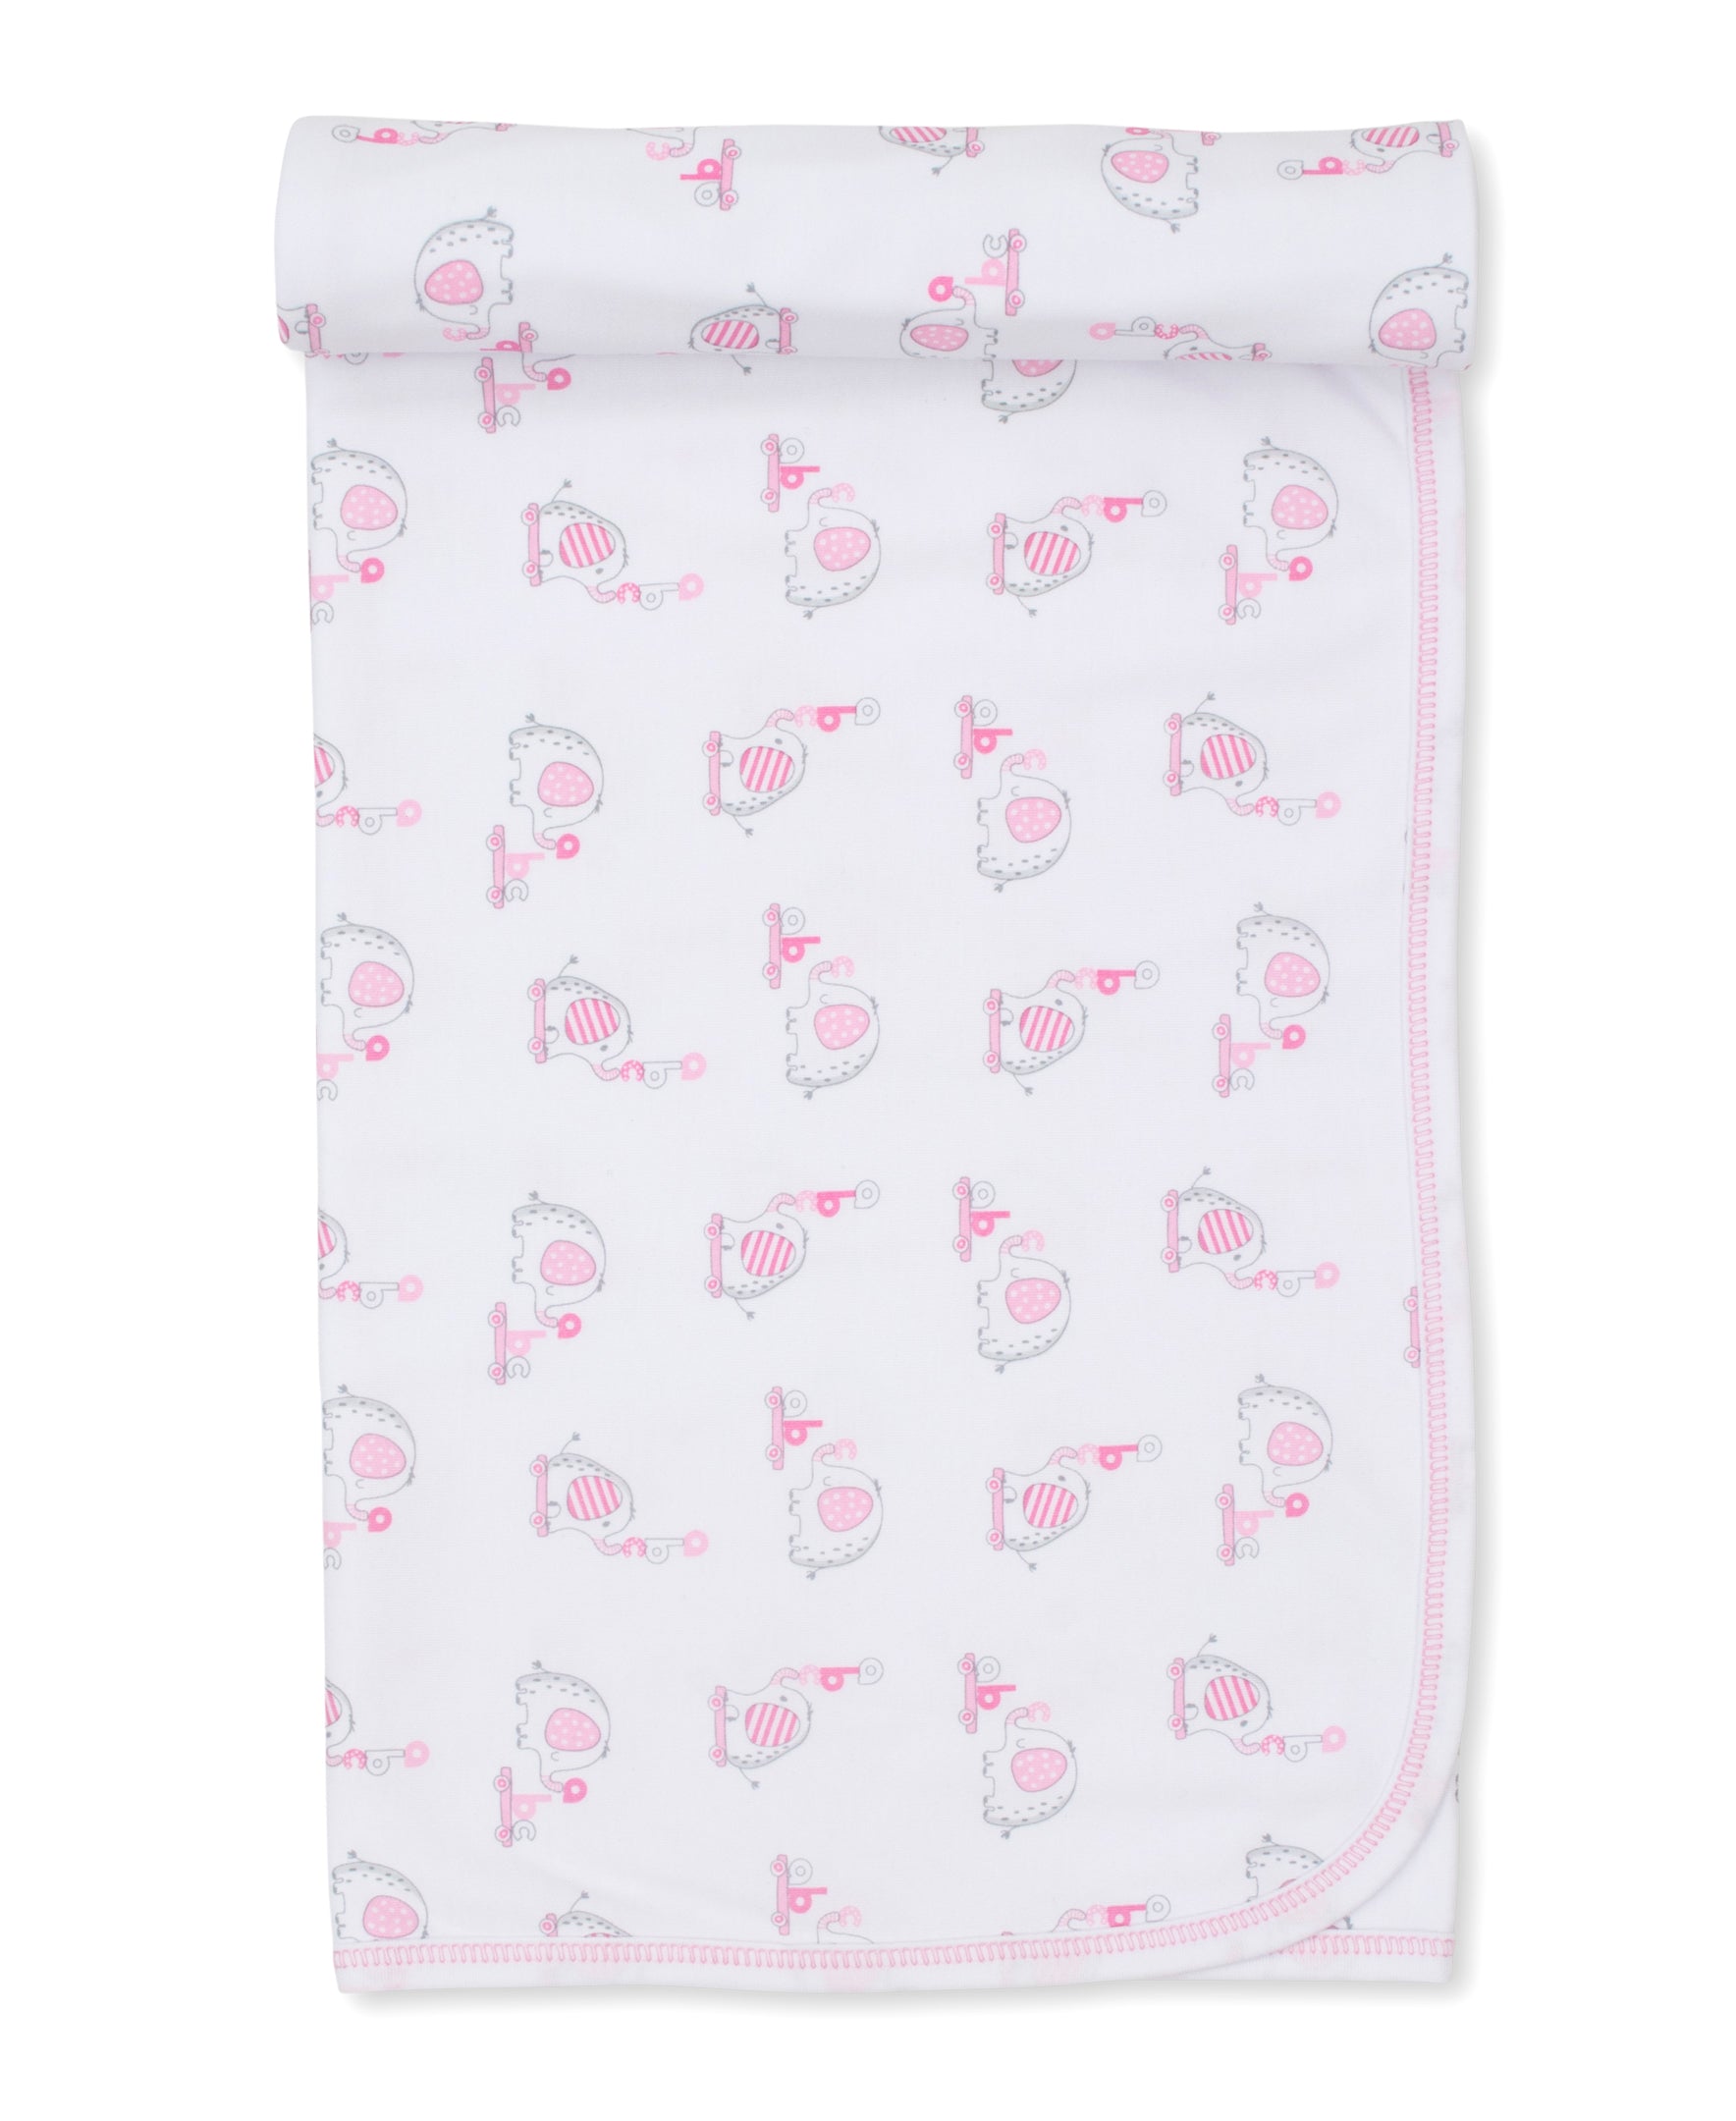 Elephant ABCs Pink Blanket - Kissy Kissy